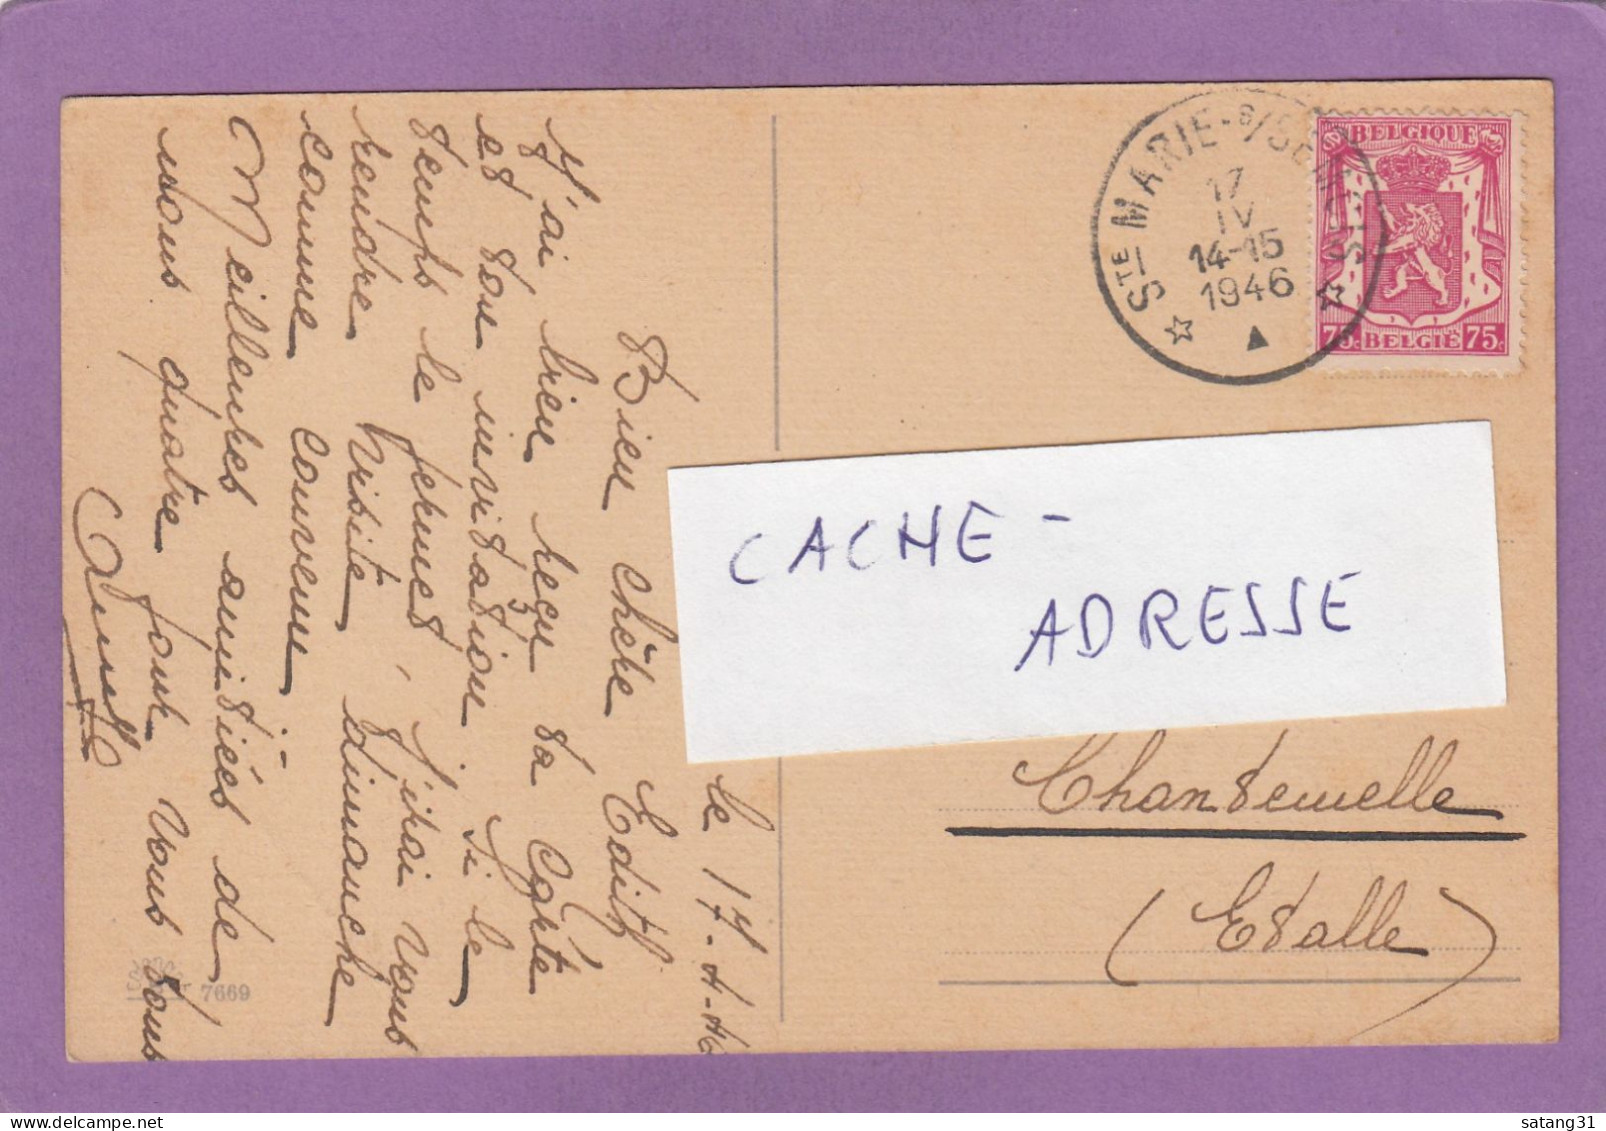 CARTE POSTALE DE SAINTE MARIE SUR BSEMOIS POUR CHANTENELLE,1946. - Storia Postale